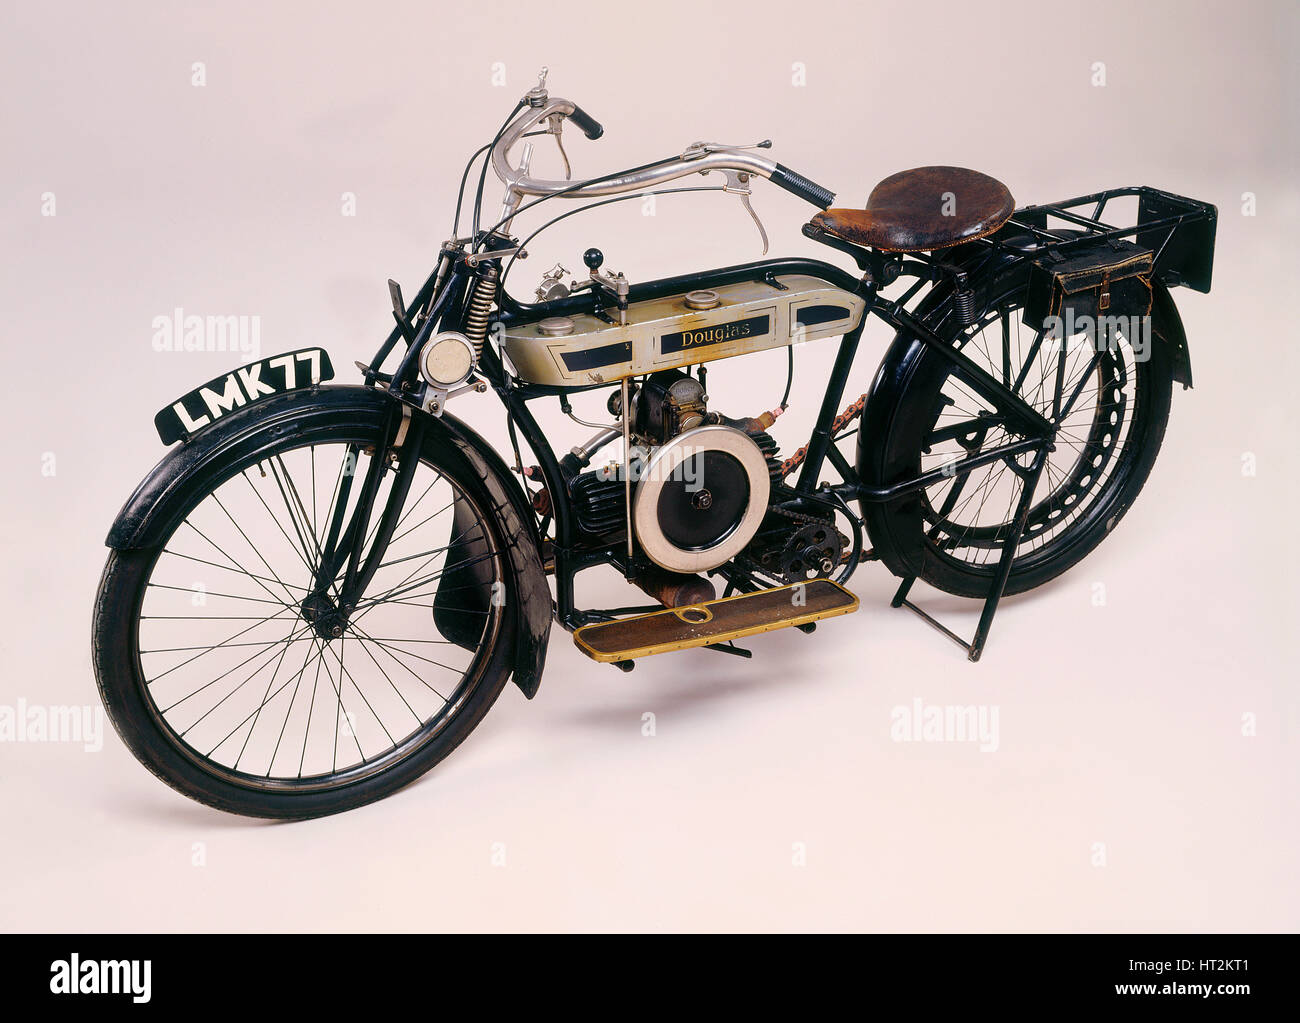 1913 Douglas motocicleta. Artista: Desconocido. Foto de stock